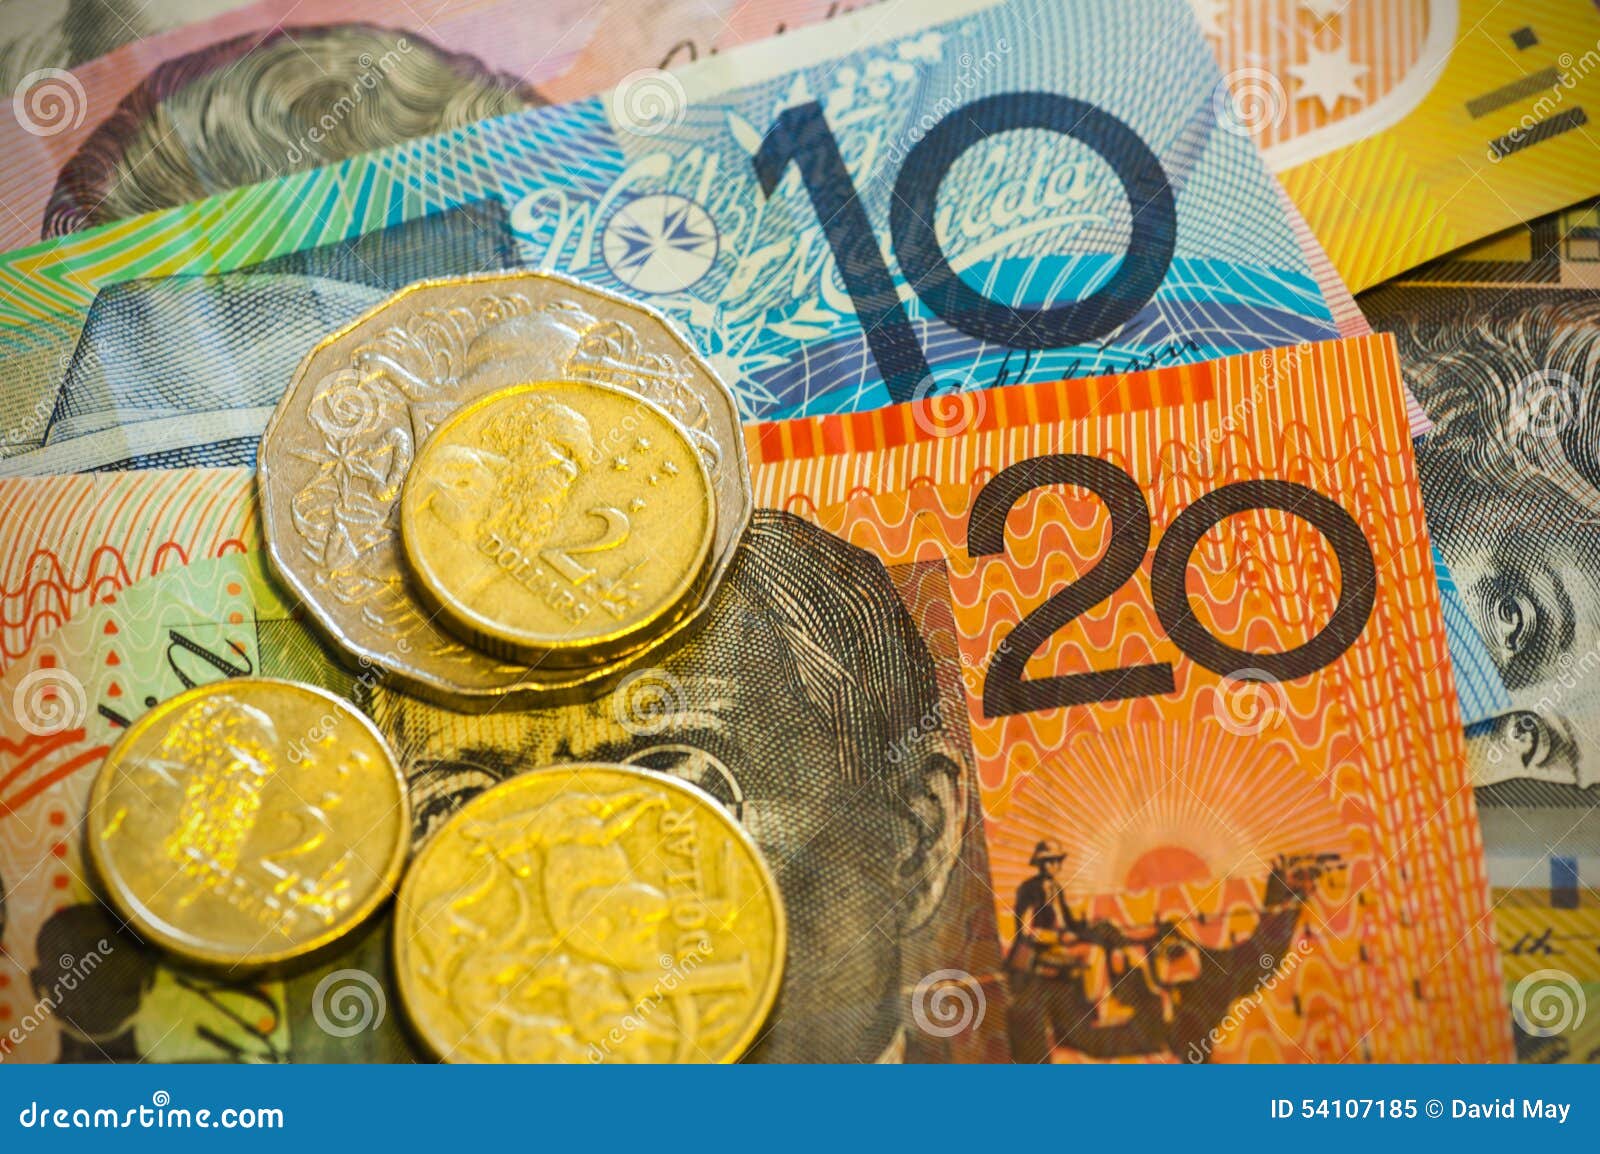 澳大利亚货币高清摄影大图-千库网